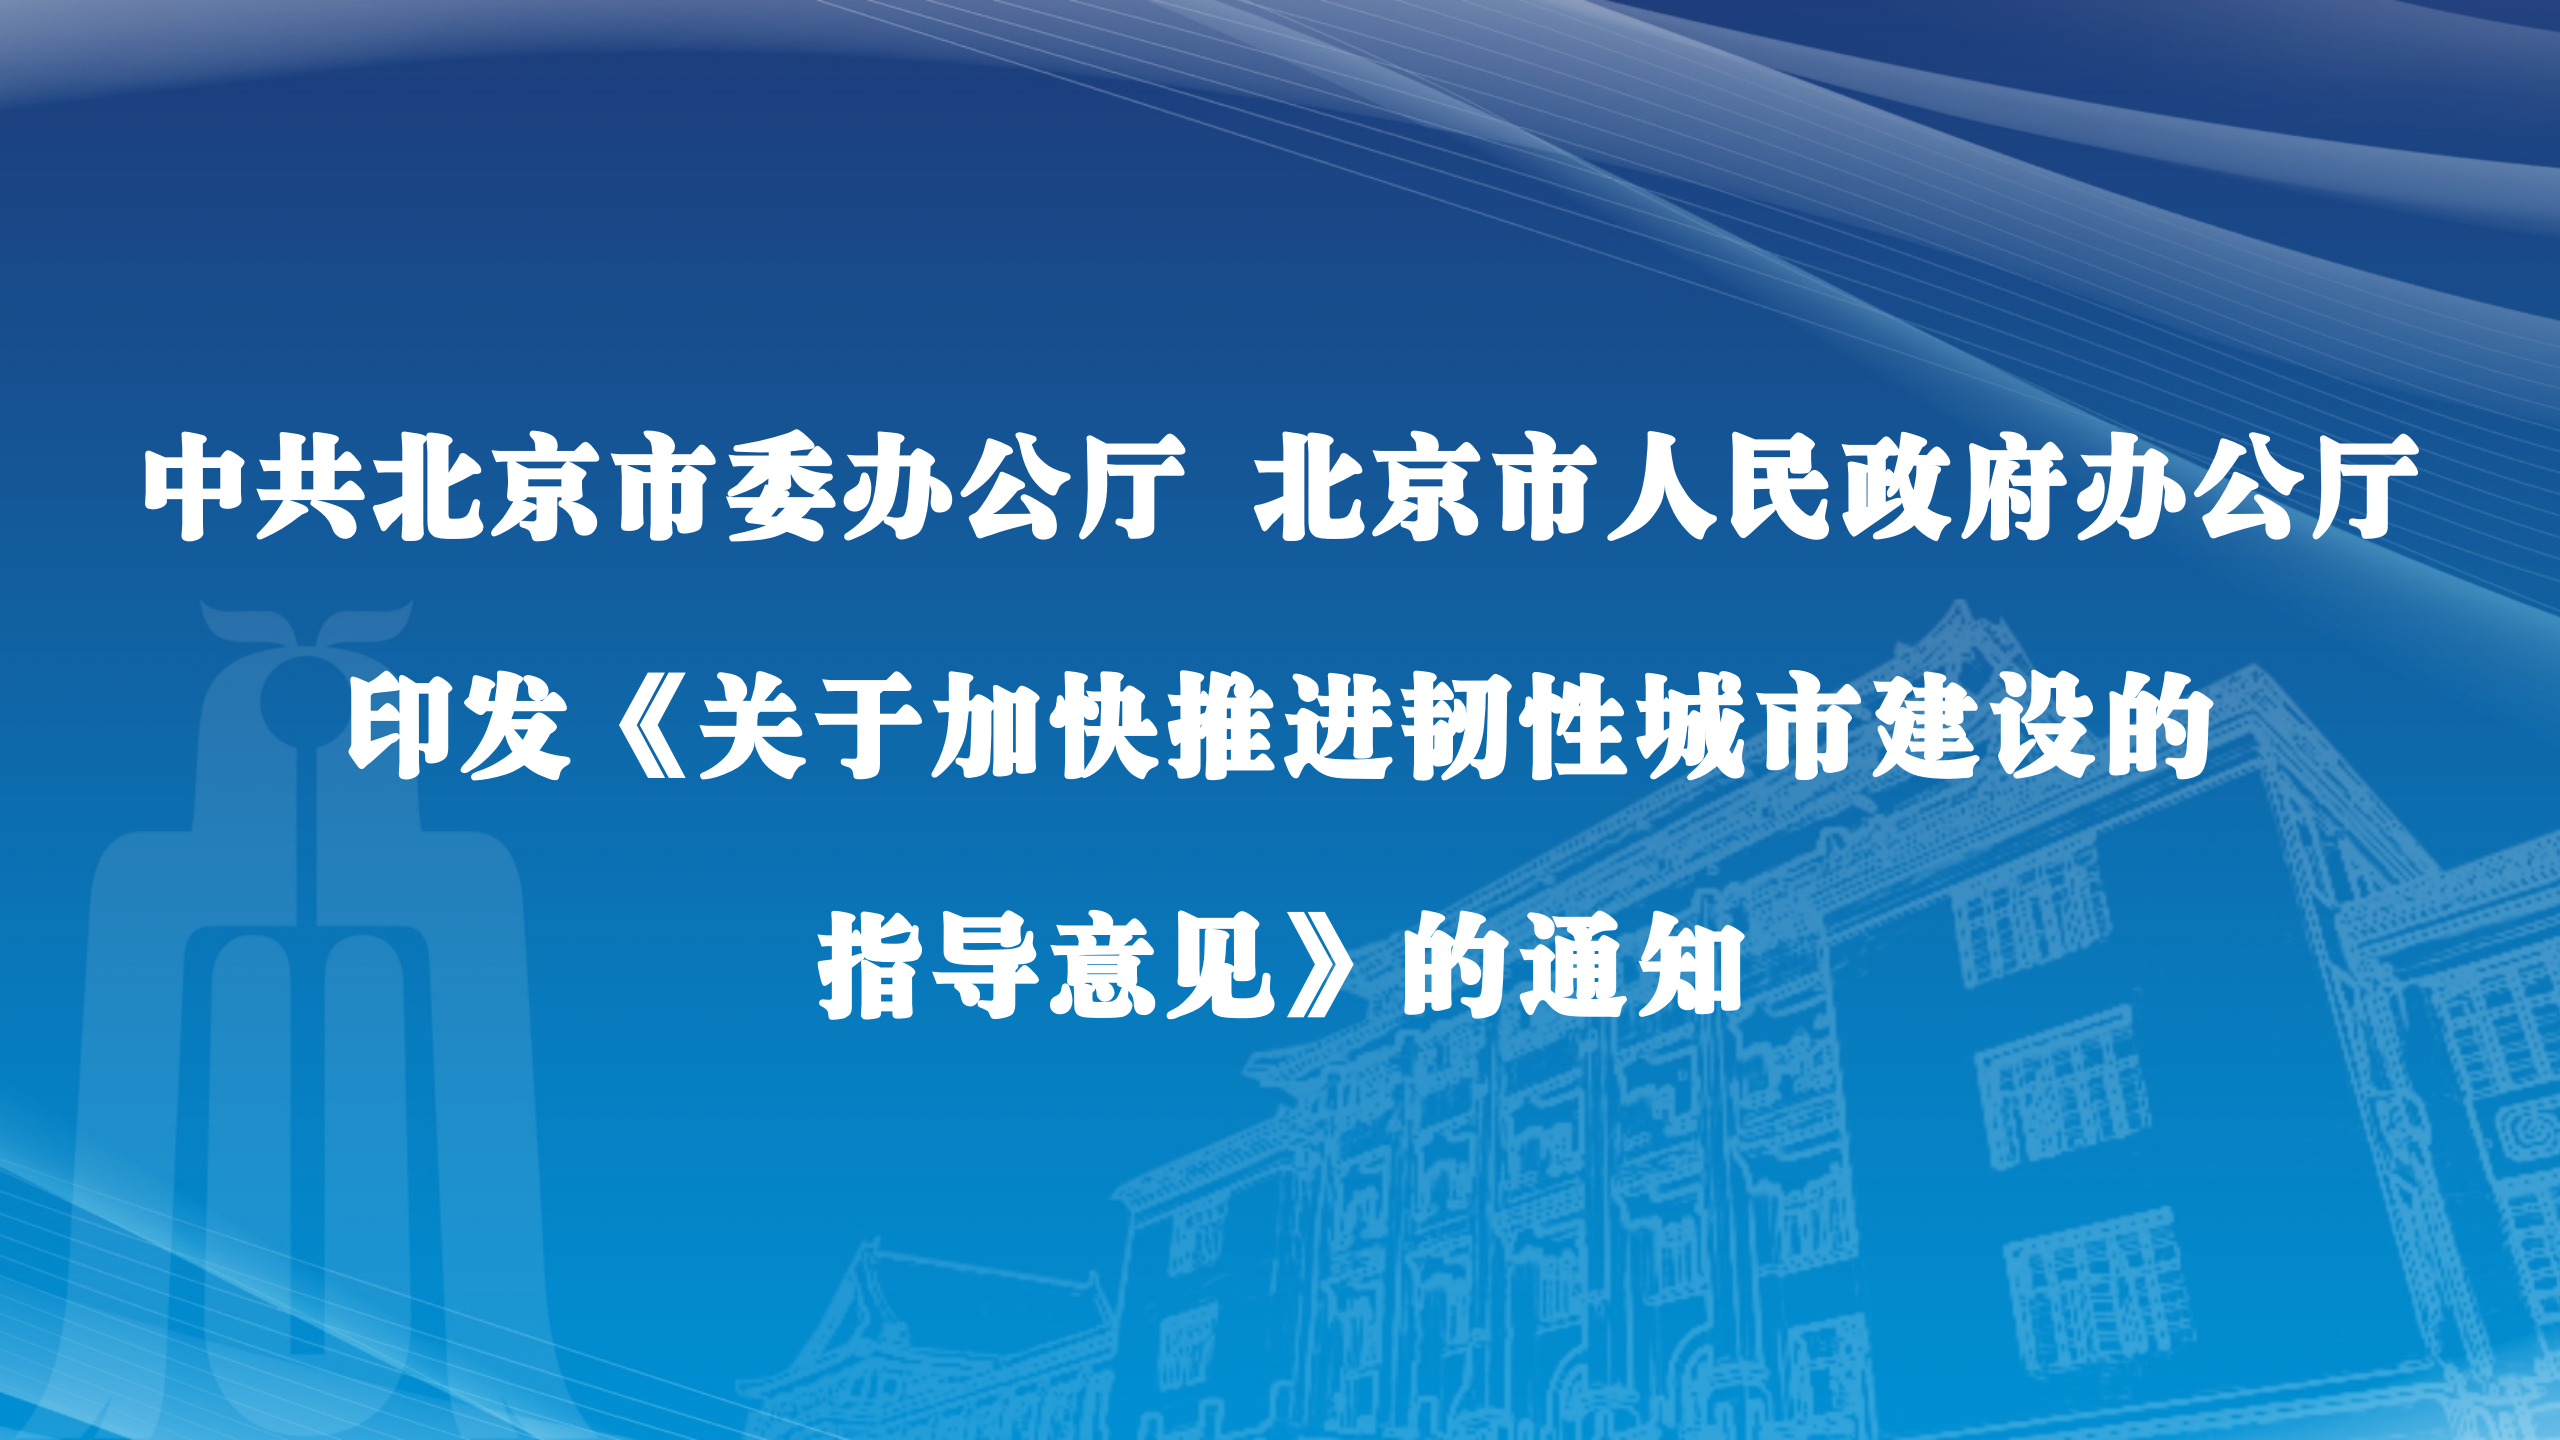 中共北京市委办公厅  北京市人民政府办公厅印发《关于加快推进韧性城市建设的指导意见》的通知